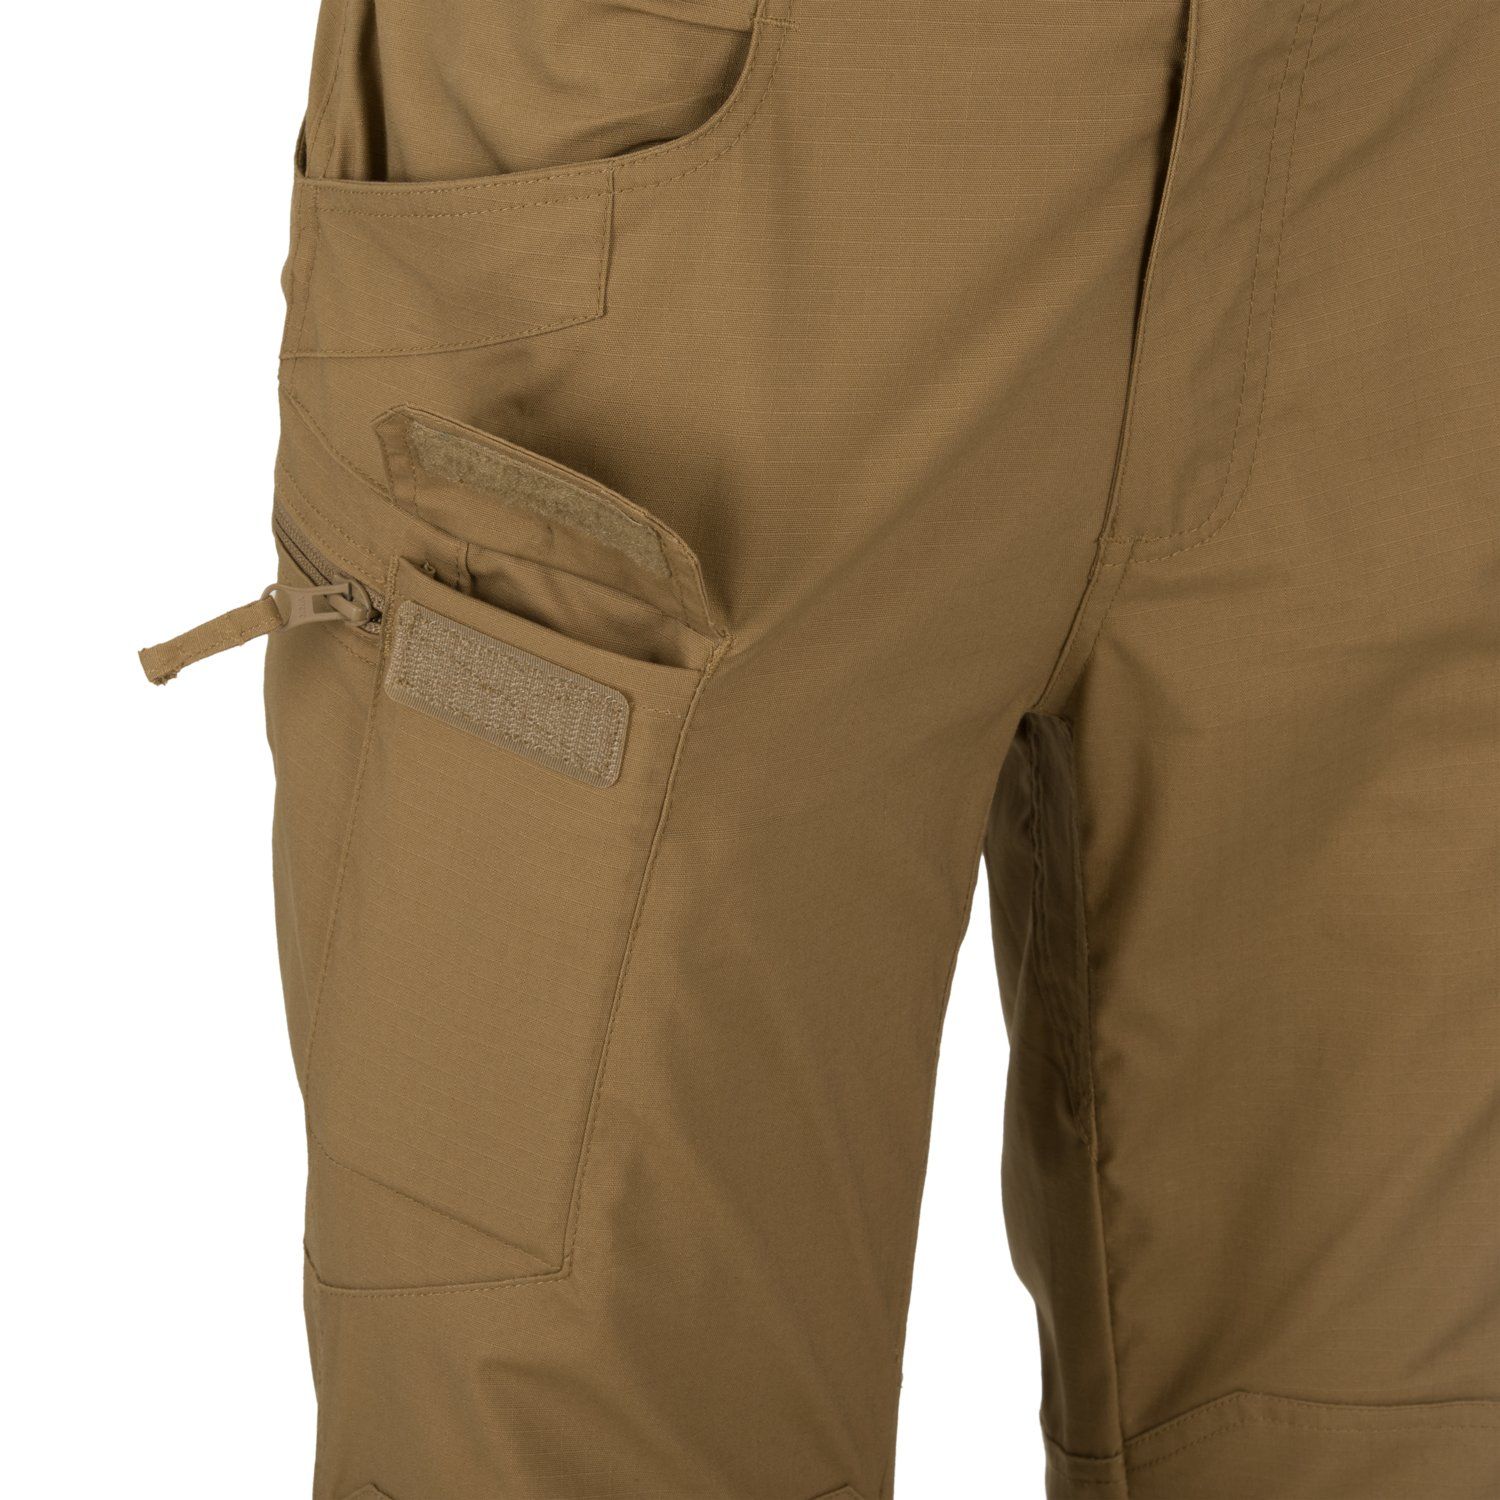 Urban Tactical Pants® Desert Night Camo